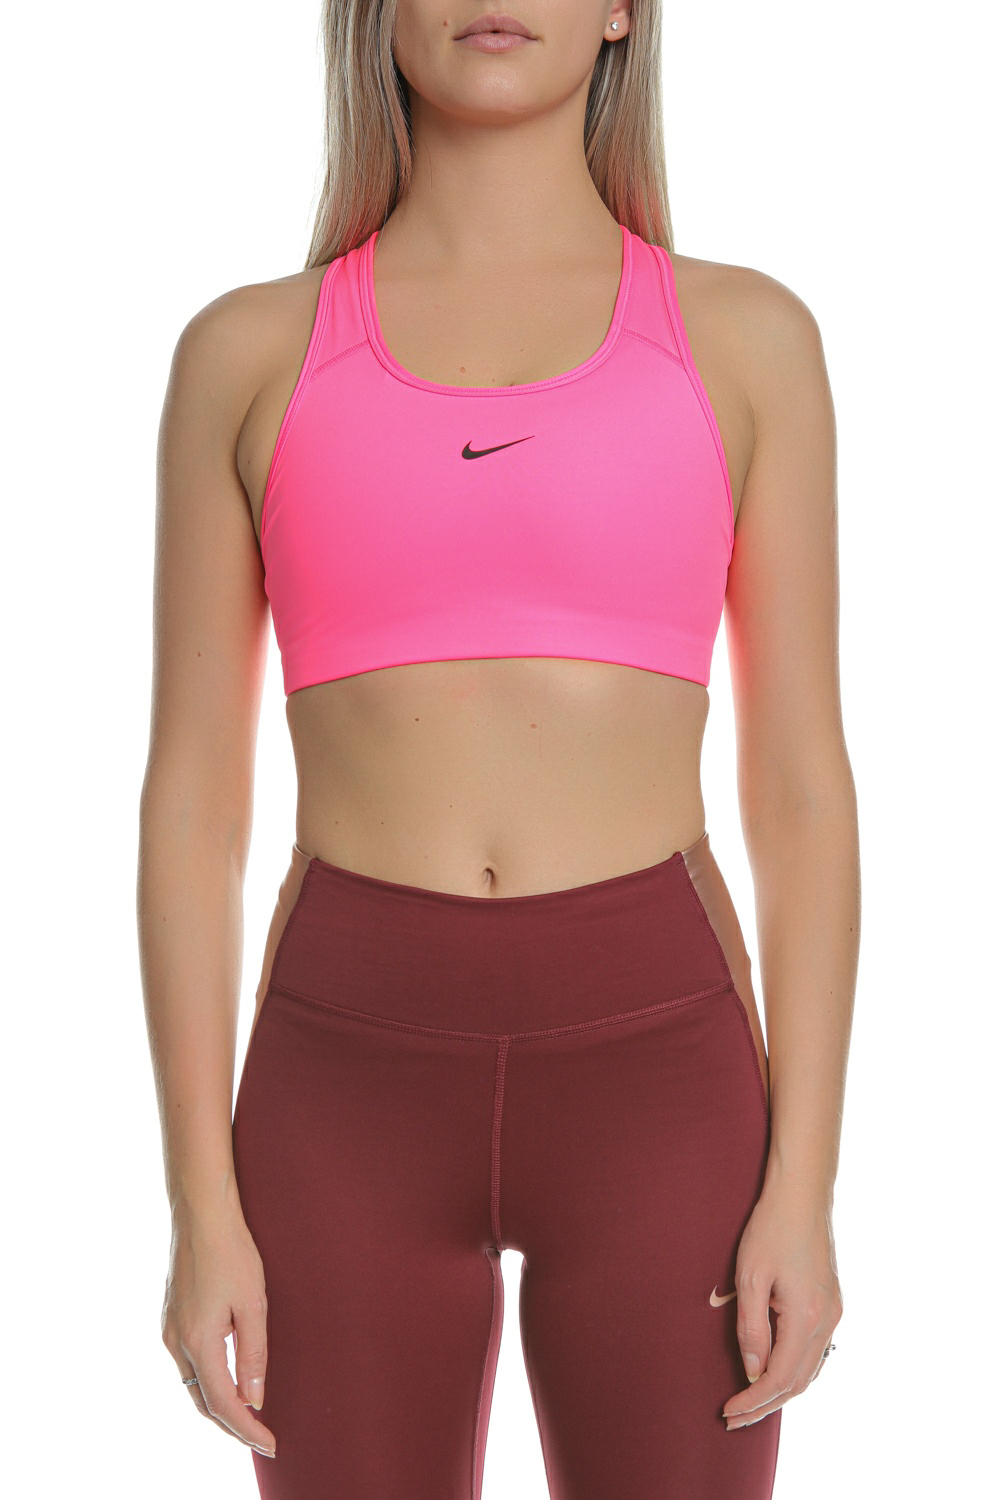 Γυναικεία/Ρούχα/Αθλητικά/Μπουστάκια NIKE - Γυναικείο αθλητικό μπουστάκι NIKE SWOOSH BRA PAD ροζ